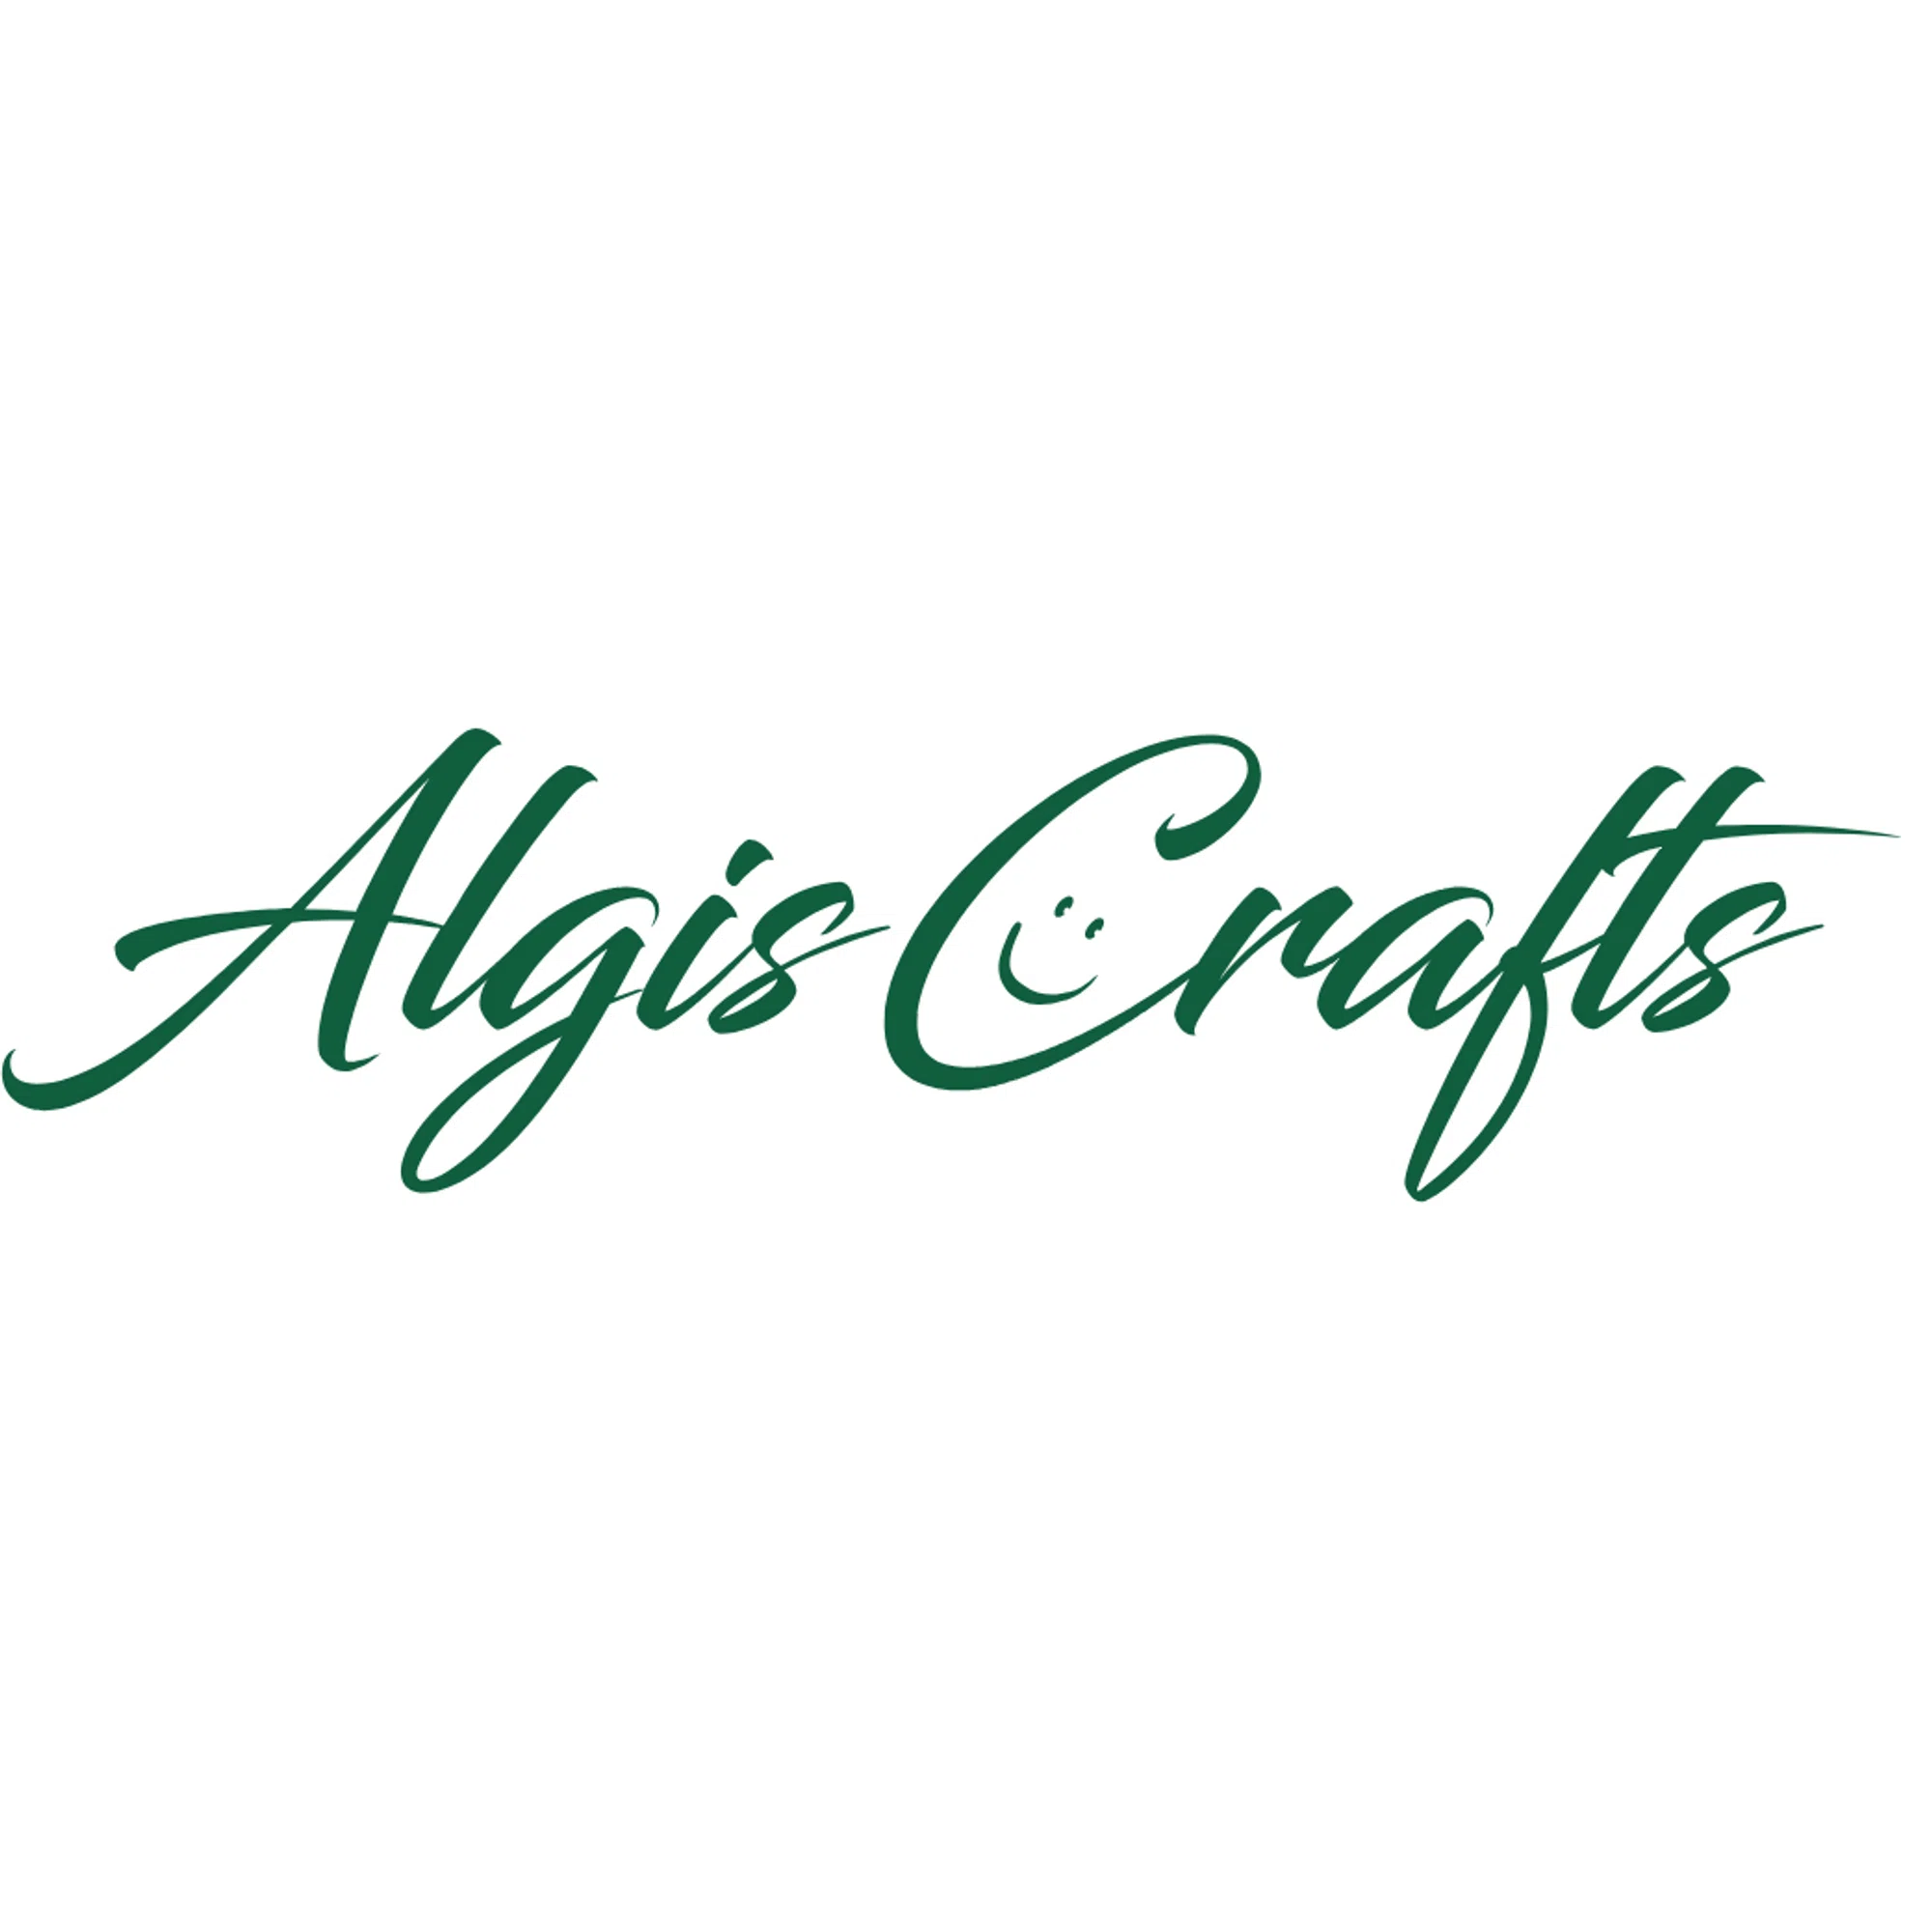 Algis Crafts